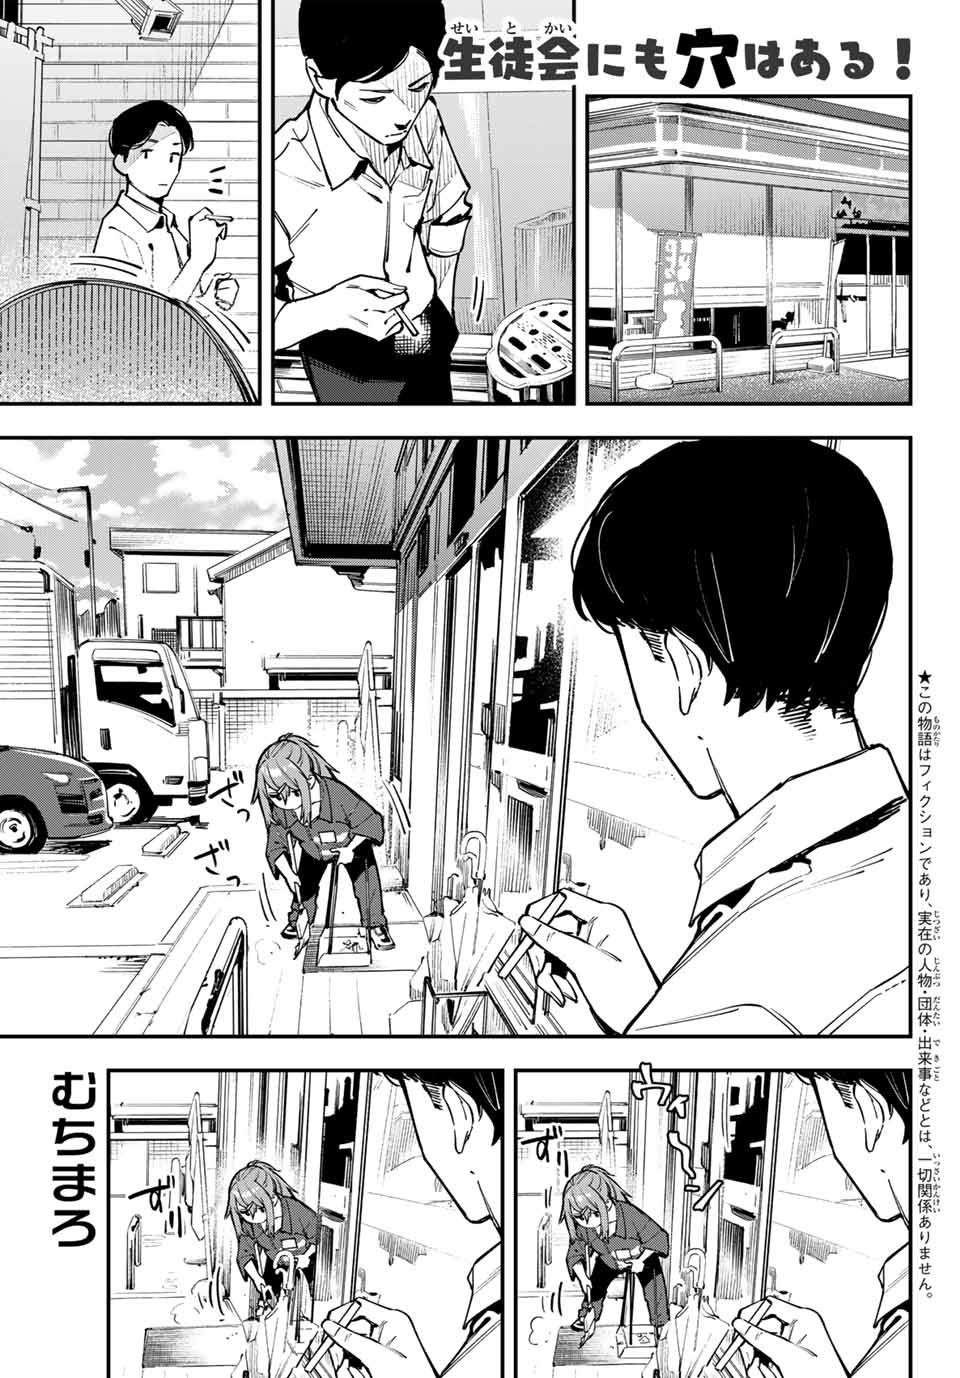 Seitokai mi mo Ana wa Aru! - Chapter 63 - Page 1